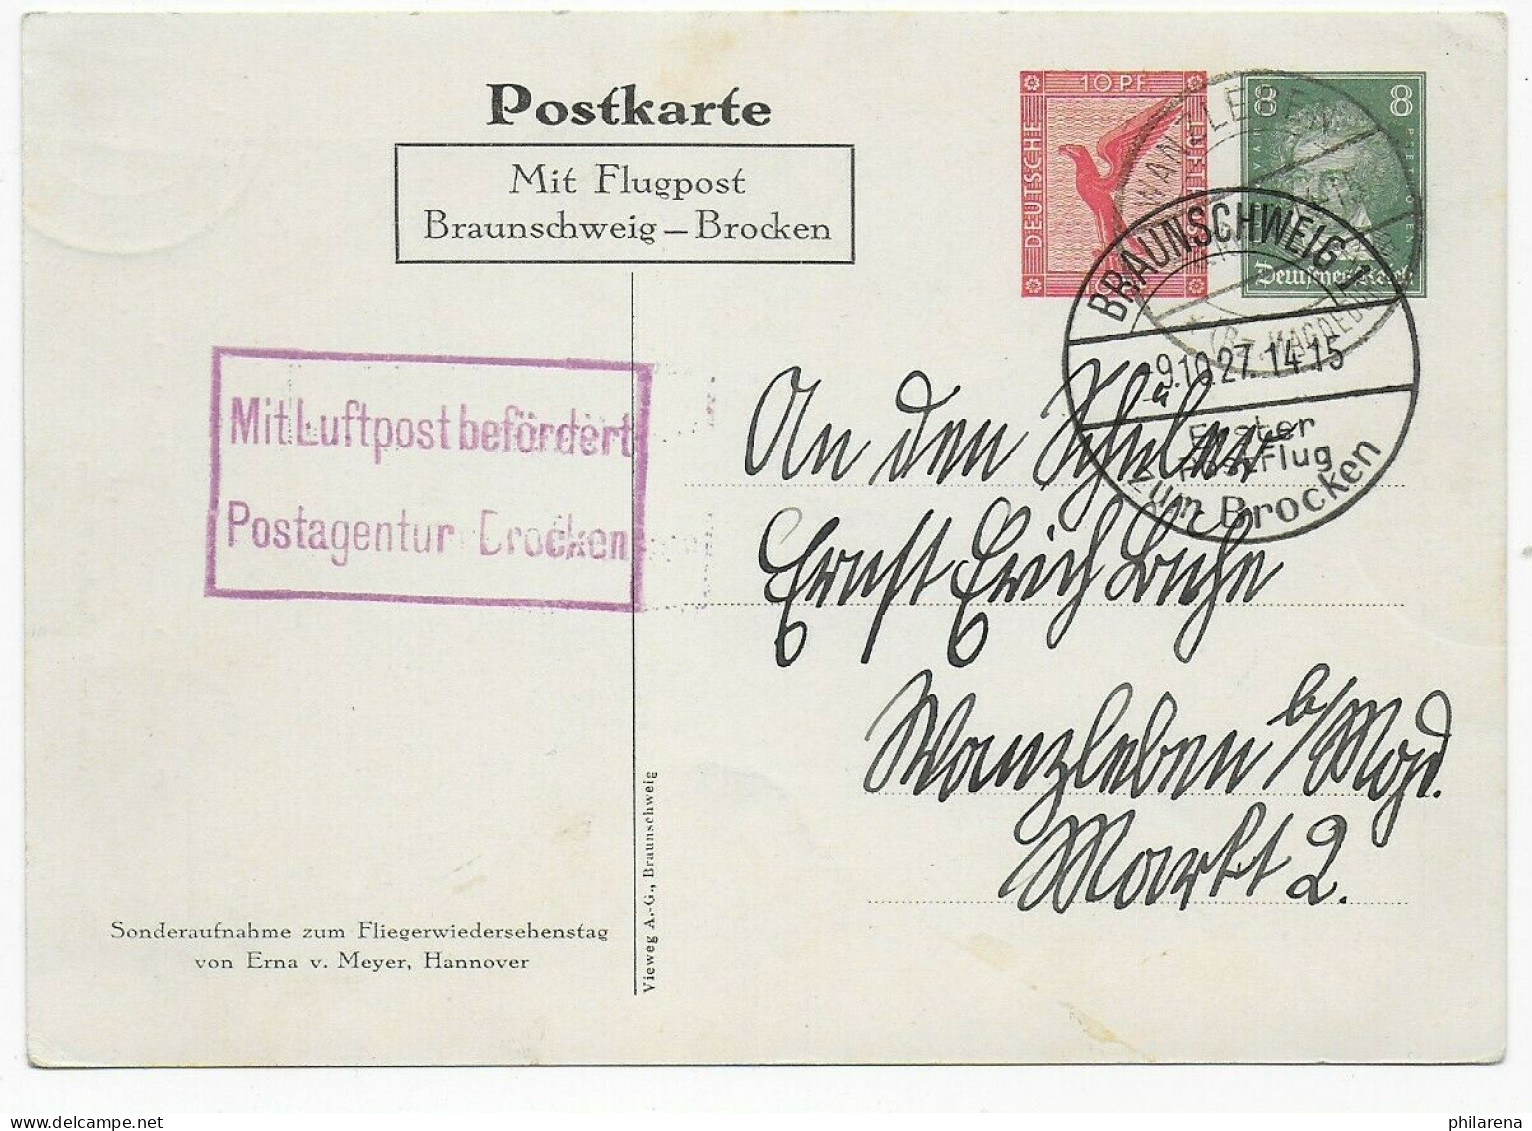 Postkarte Luftpost Postagentur Brocken: Braunschweig-Brocken, Wanzleben, 1927 - Briefe U. Dokumente